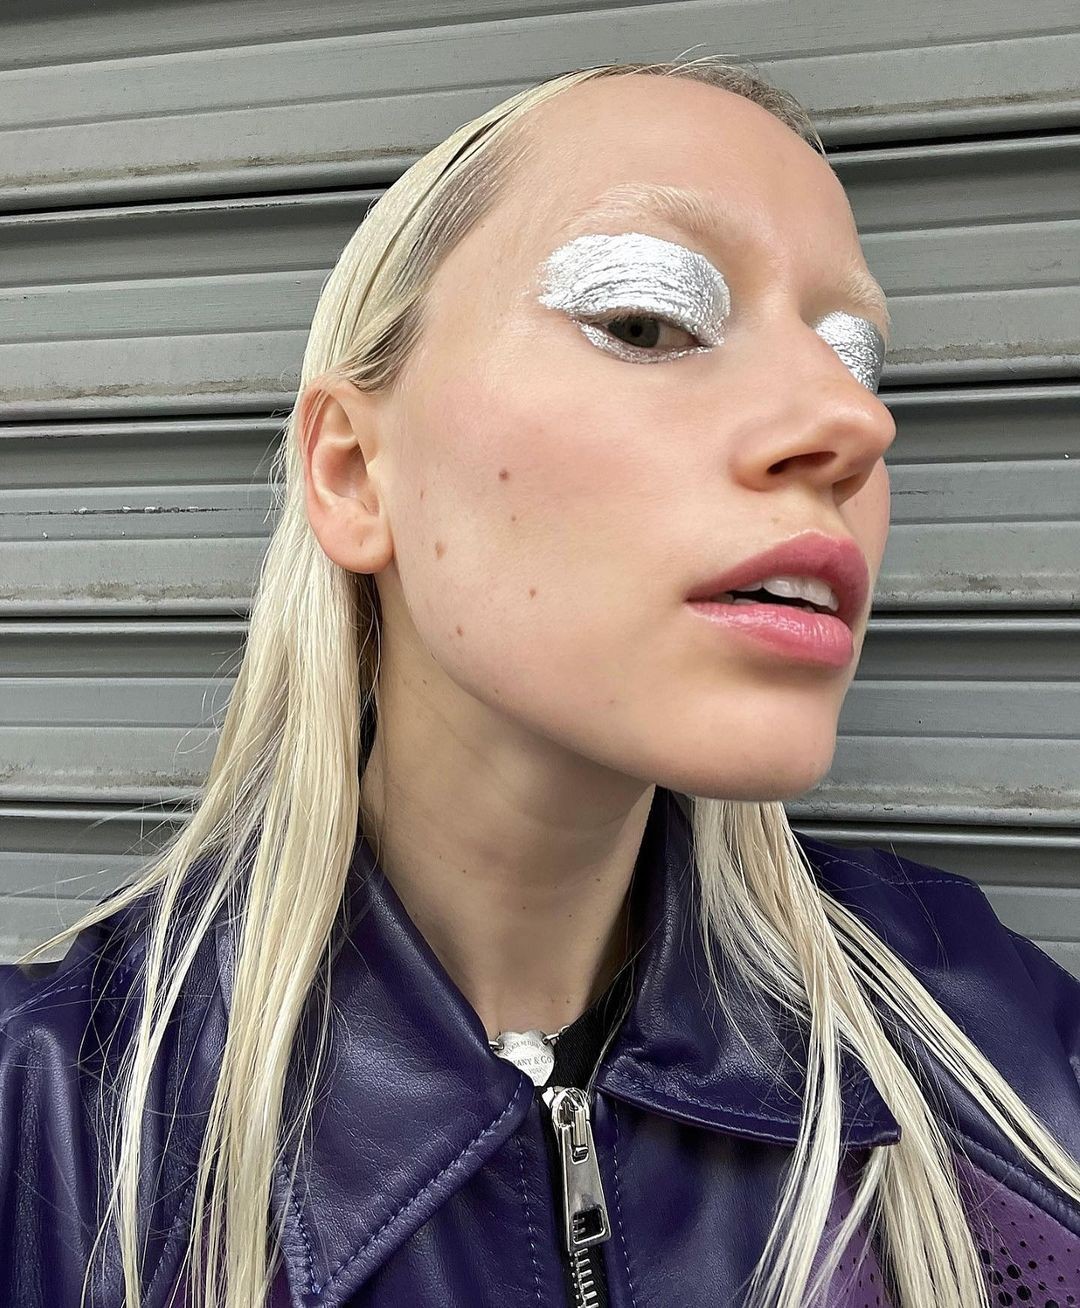 Maquiagem com glitter — Foto: Instagram/ Reprodução